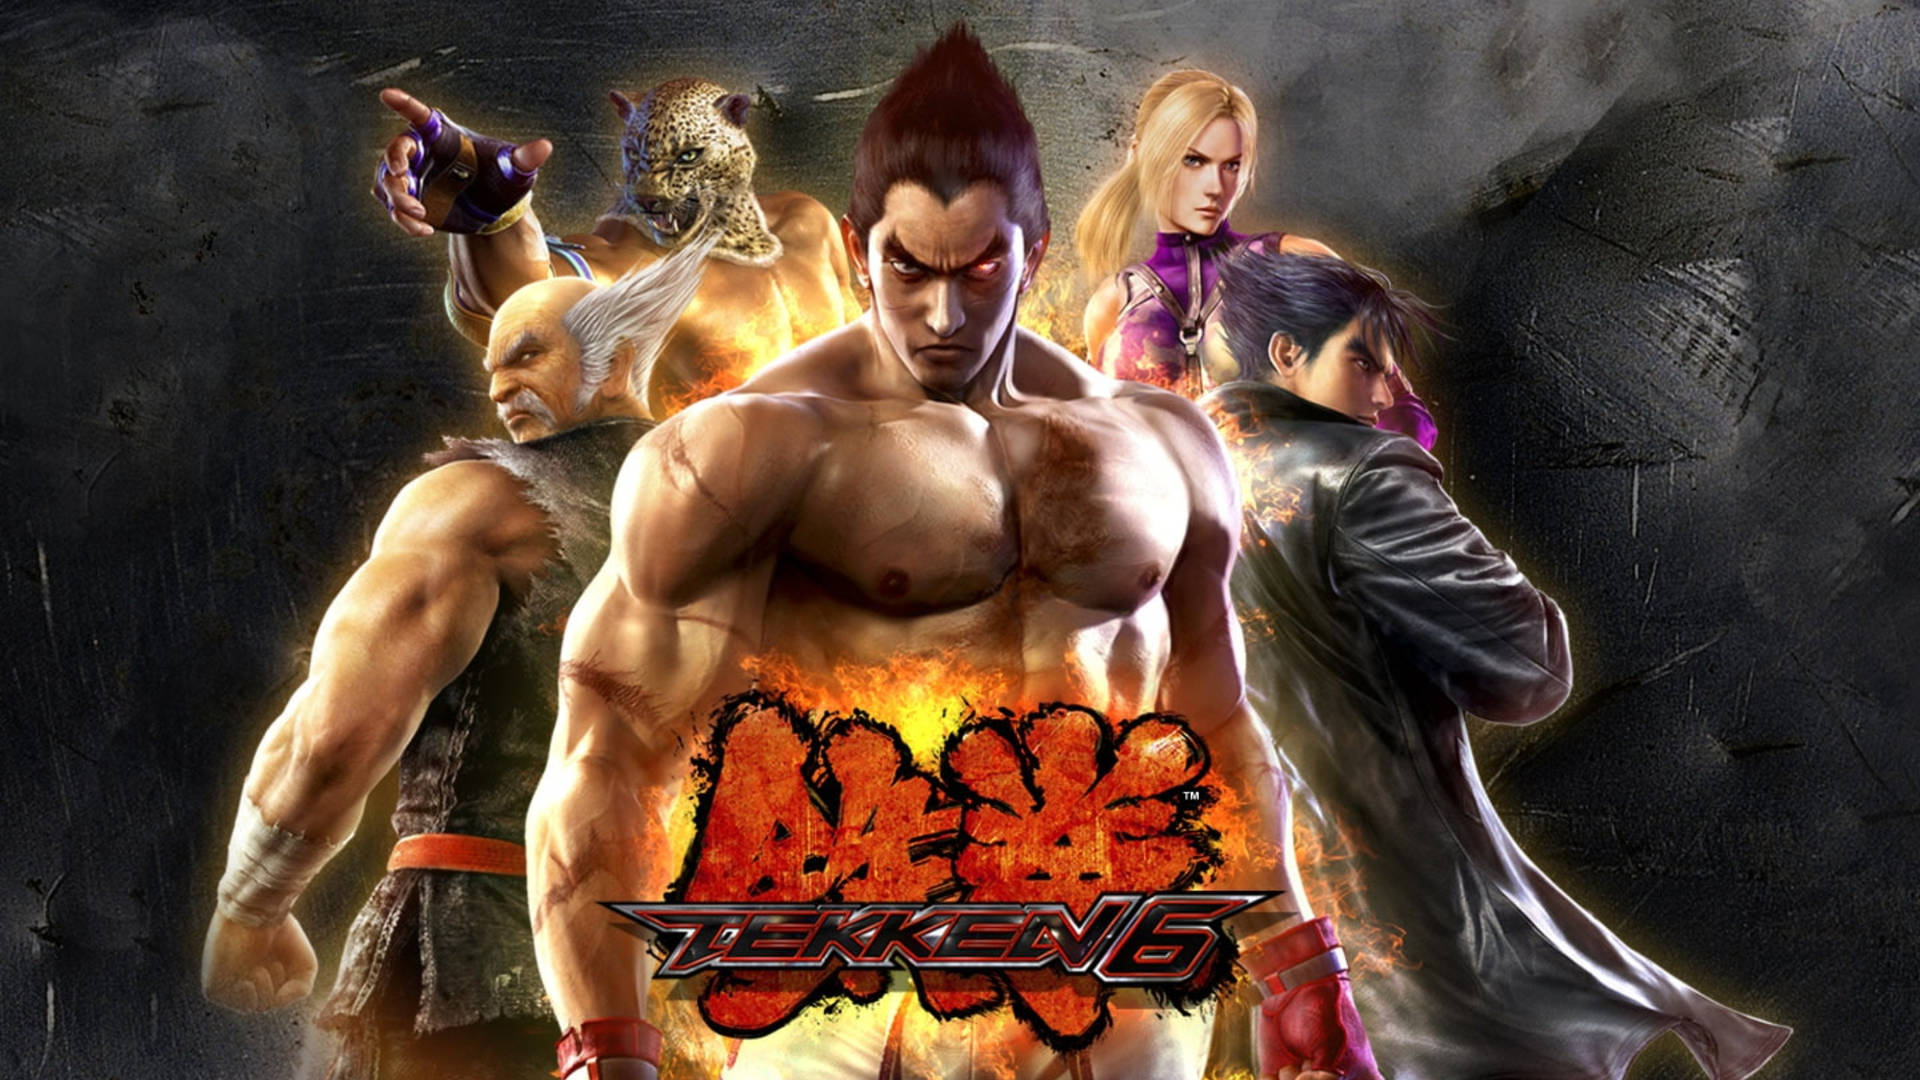 Игра теккен 6. Кадзуя Мисима теккен 6. Tekken 6 PSP обложка. Tekken 6 (ps3). Tekken 6 Xbox 360 обложка.